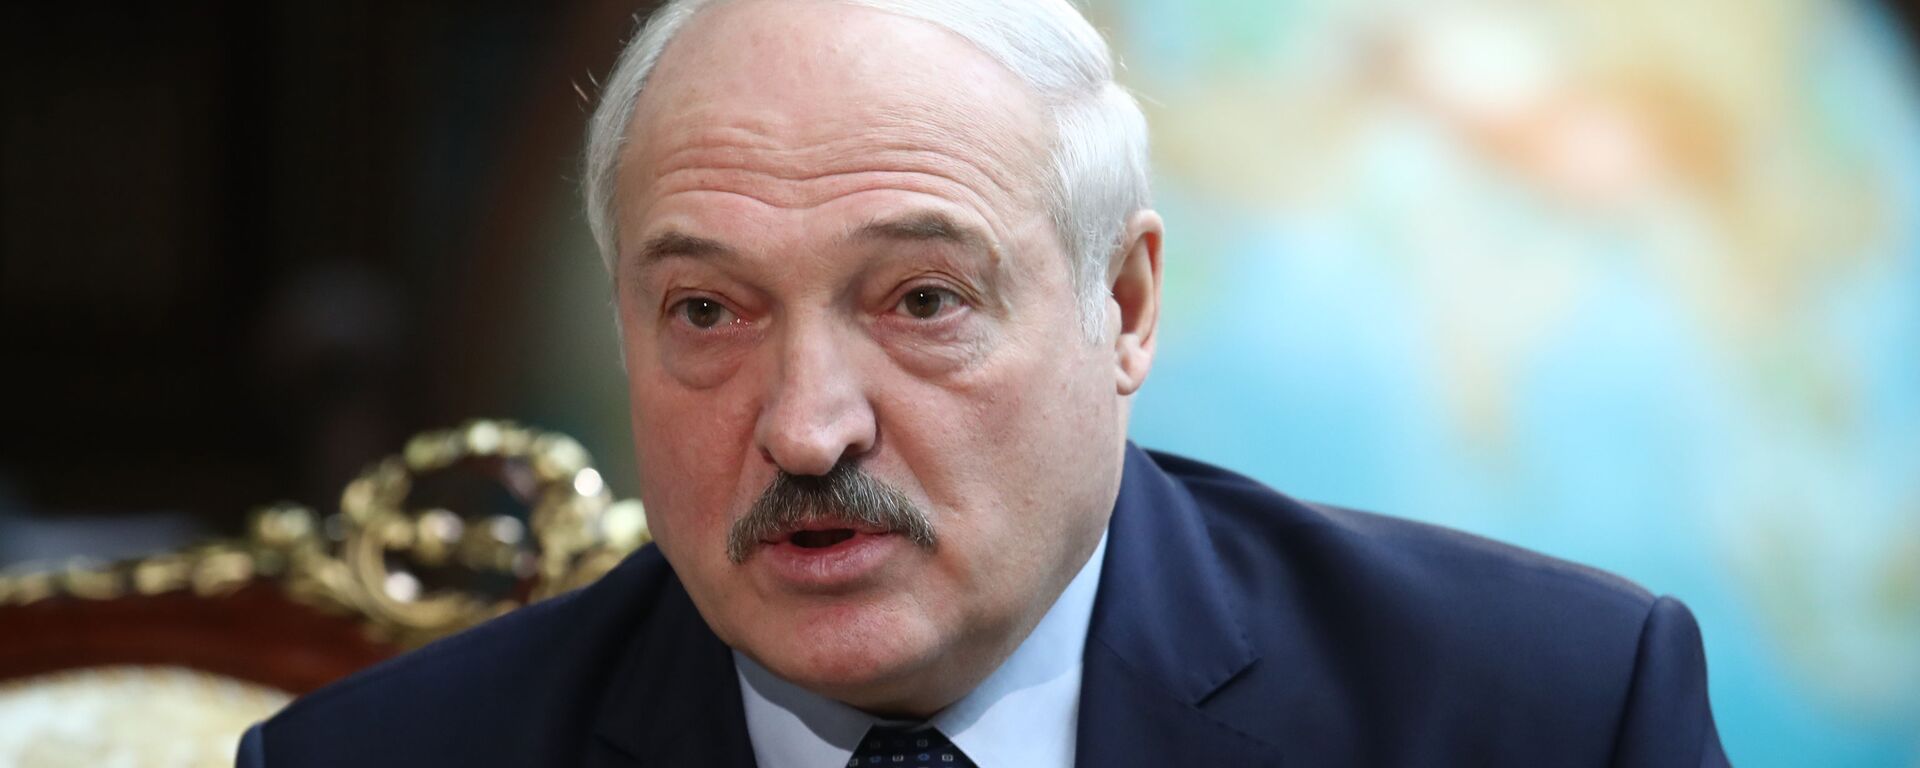 Alexandr Lukashenko, presidente de Bielorrusia  - Sputnik Mundo, 1920, 20.07.2021